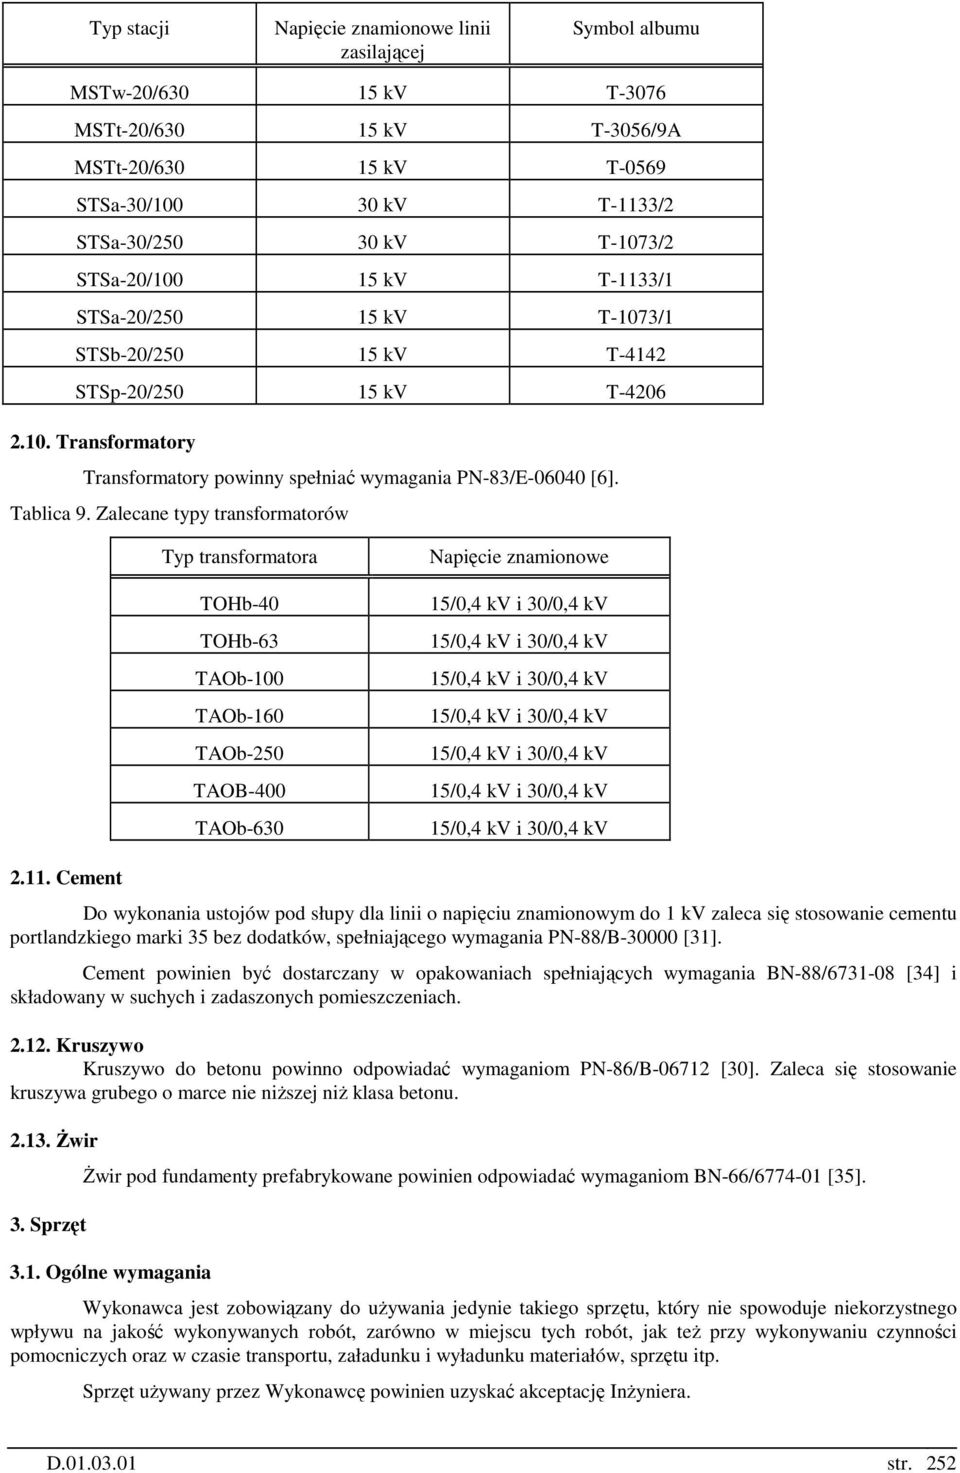 Zalecane typy transformatorów Typ transformatora TOHb-40 TOHb-63 TAOb-100 TAOb-160 TAOb-250 TAOB-400 TAOb-630 Napięcie znamionowe 15/0,4 kv i 30/0,4 kv 15/0,4 kv i 30/0,4 kv 15/0,4 kv i 30/0,4 kv